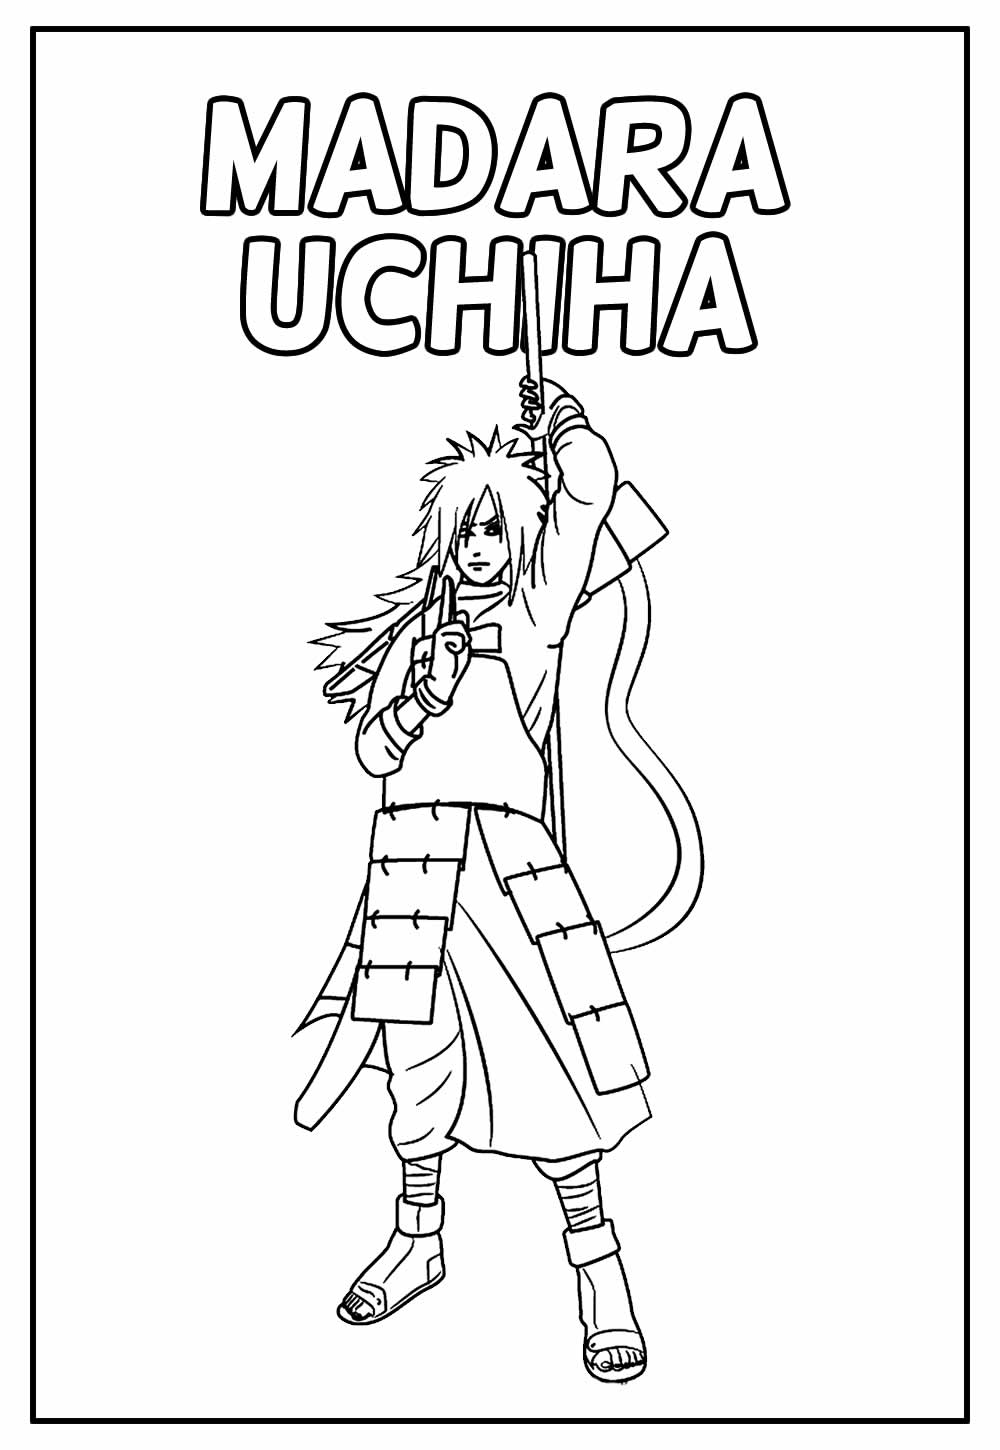 Desenho Educativo de Naruto a para colorir - Madara Uchiha